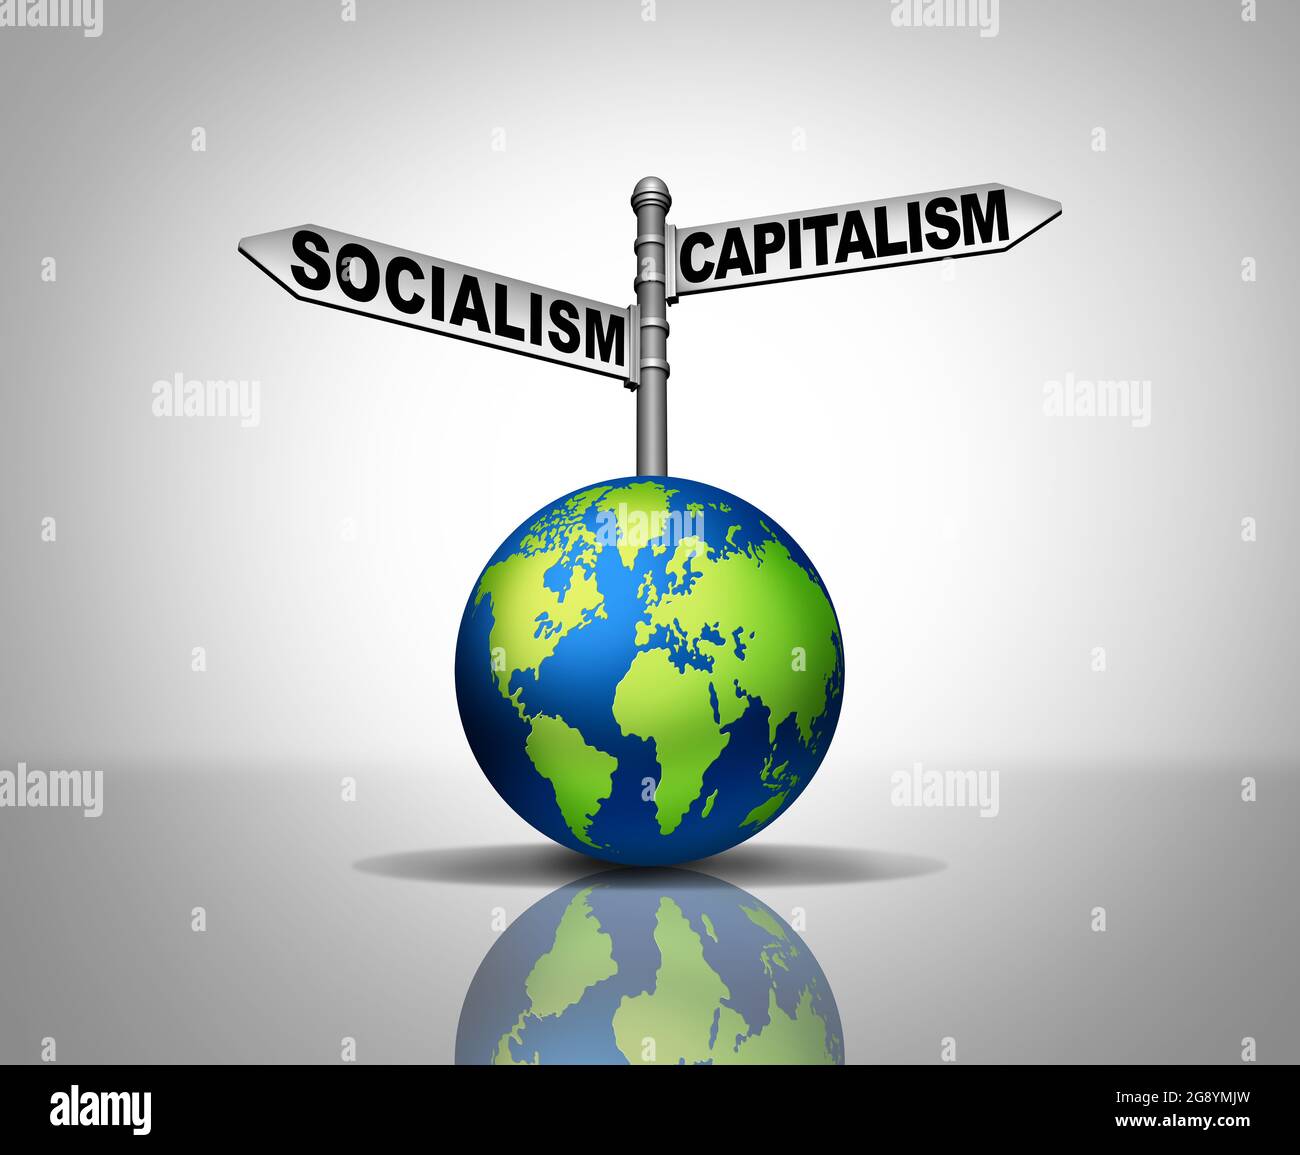 El socialismo y el capitalismo son dos sistemas económicos y políticos diferentes como opción para el camino de la ideología social global y la sociedad. Foto de stock